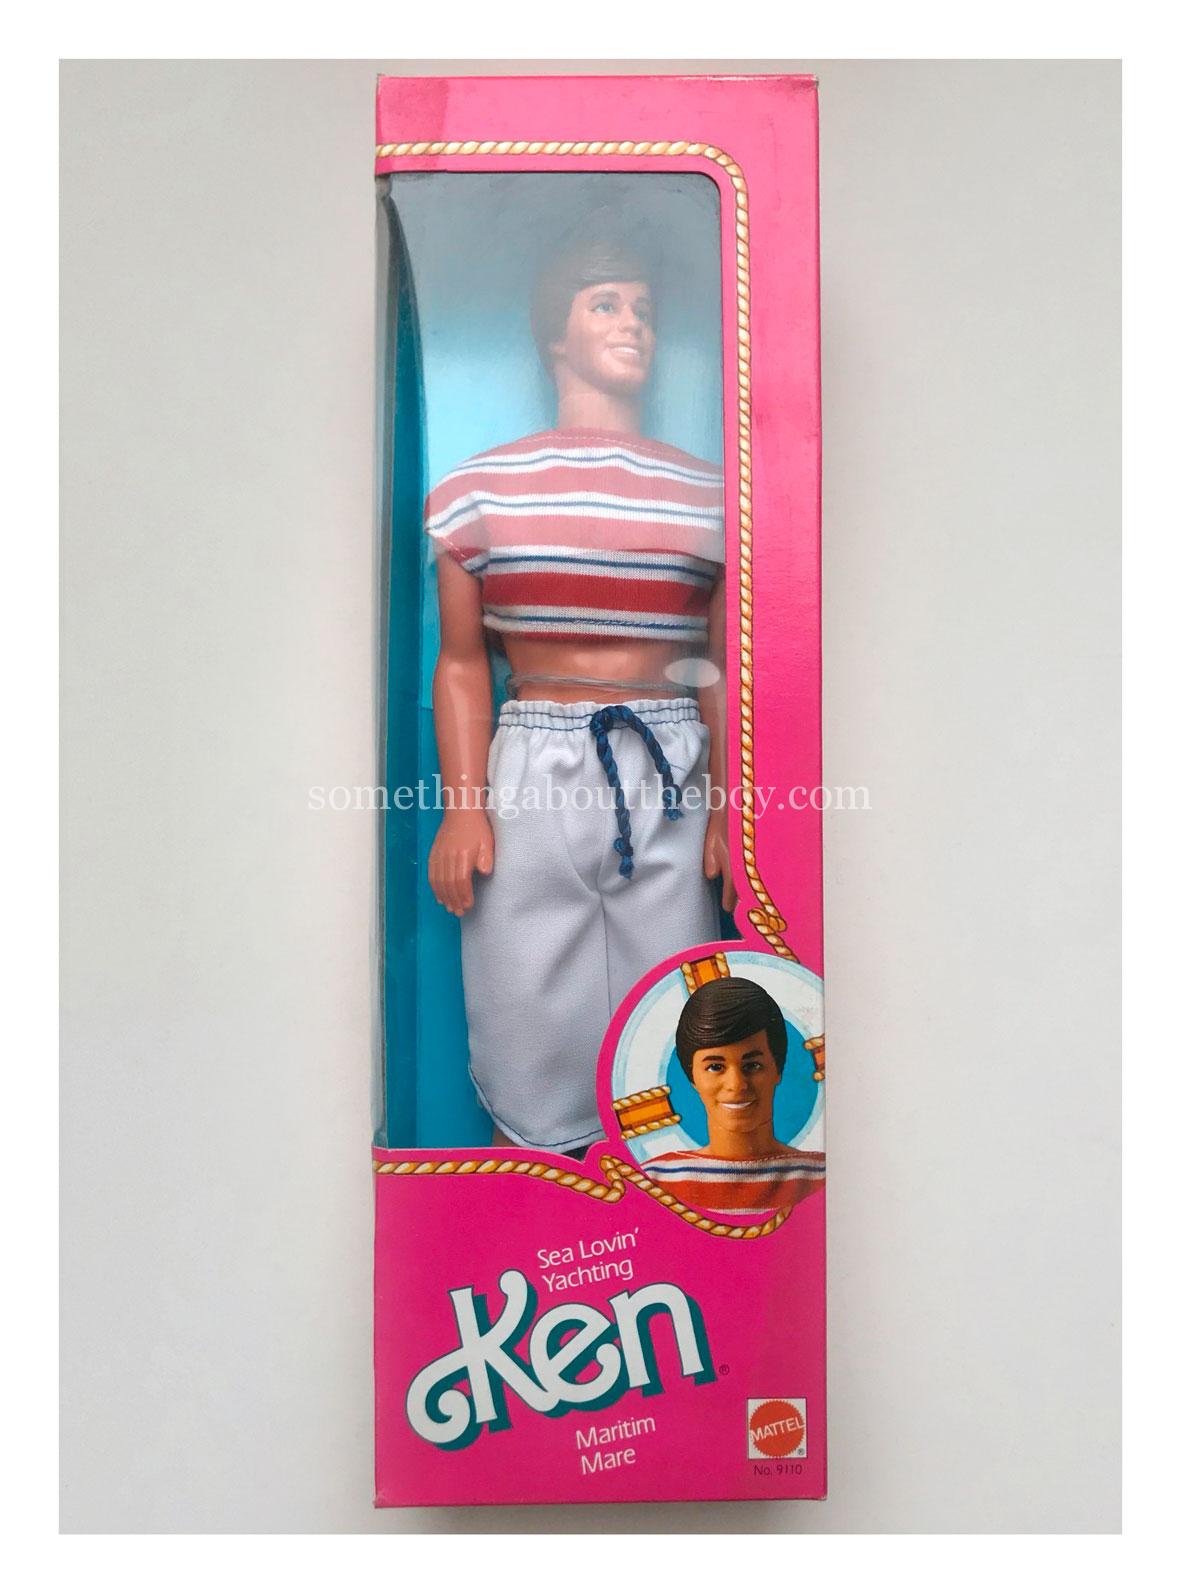 1985 #9110 Sea Lovin' Ken ('Yachting' packaging)